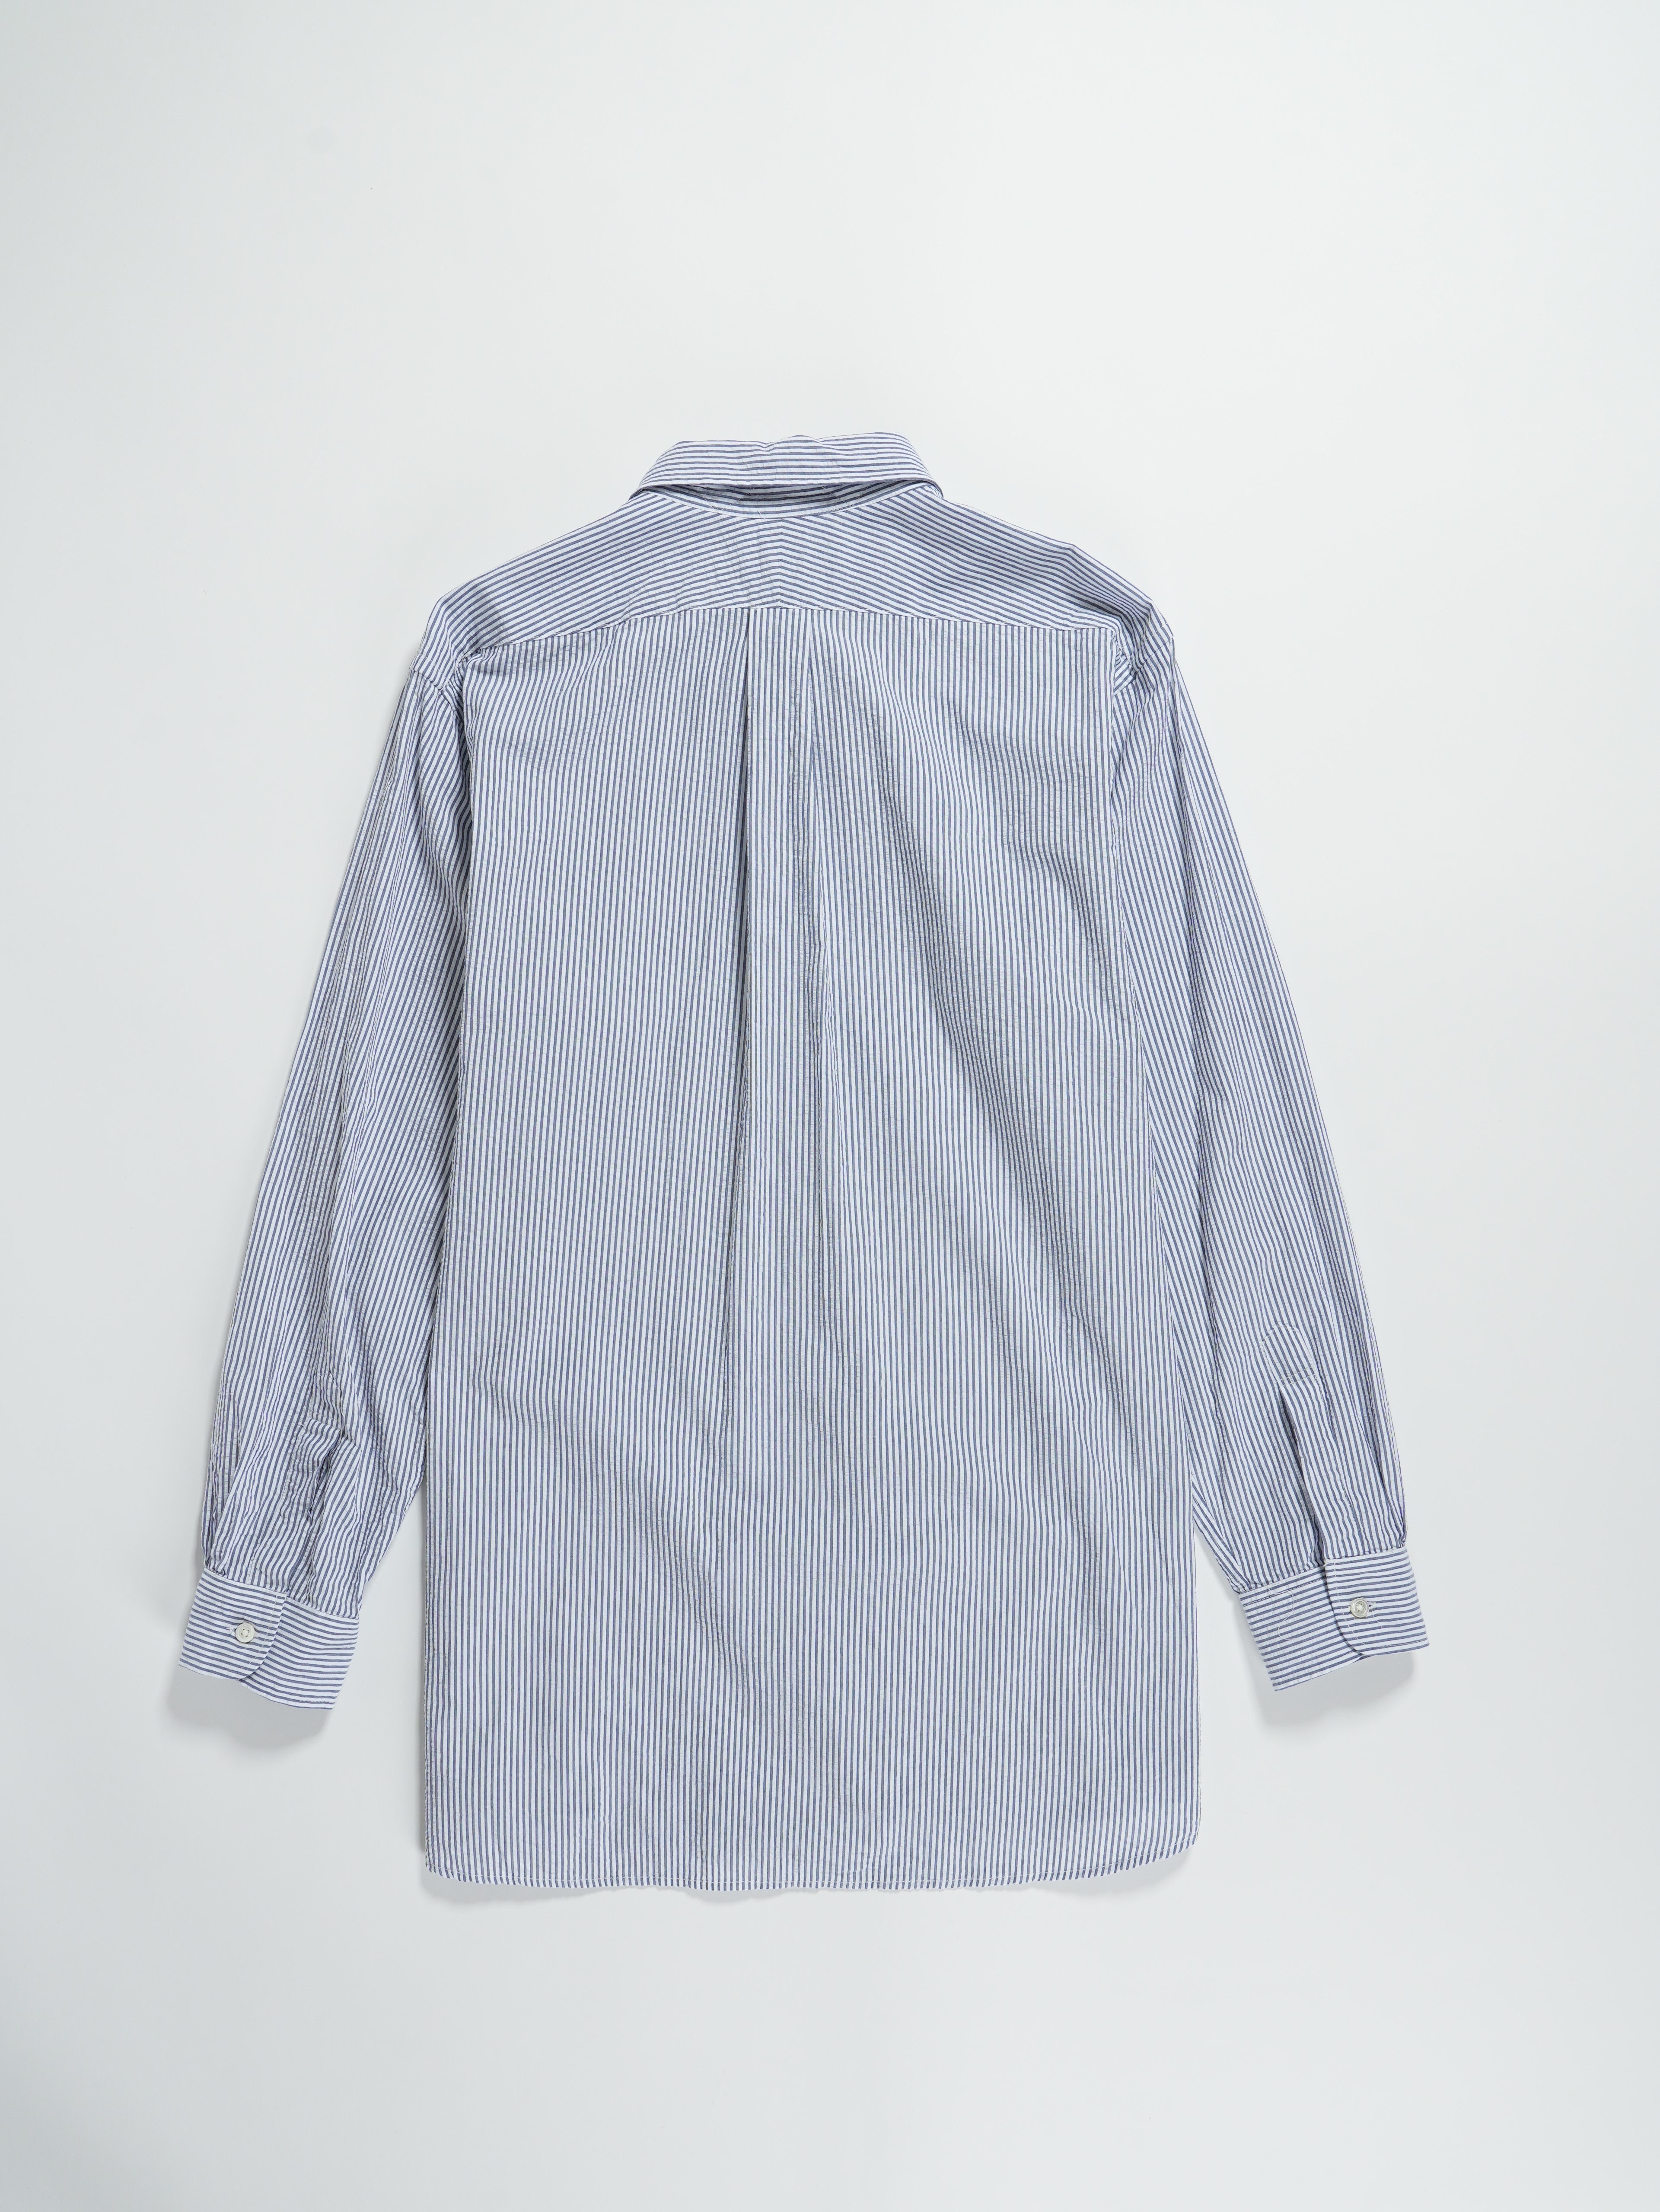 19 Century BD Shirt - Navy / White Cotton Seersucker